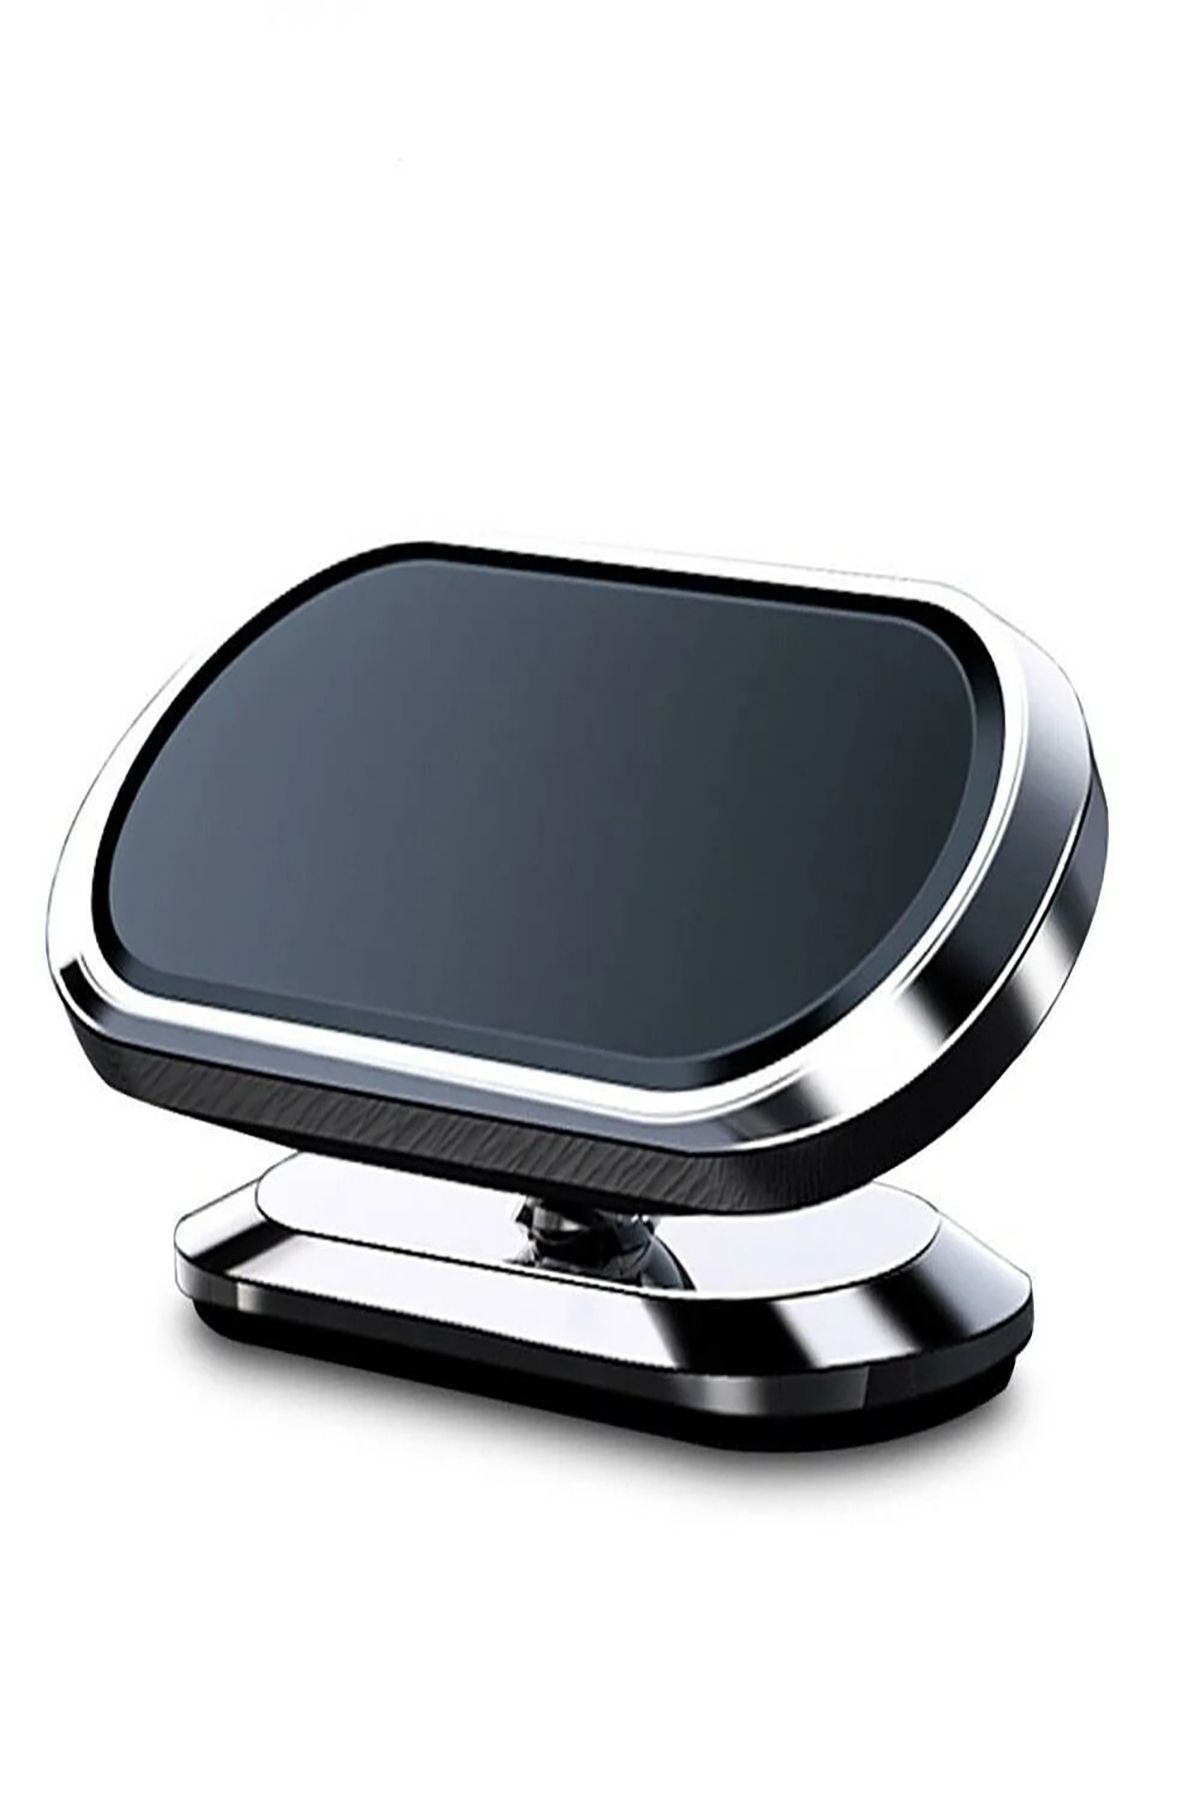 NiCe Shop Çok Amaçlı Manyetik Telefon Tutucu,360 Derece Dönme Özelliği,Siyah Güçlü 6 Mıknatıslı